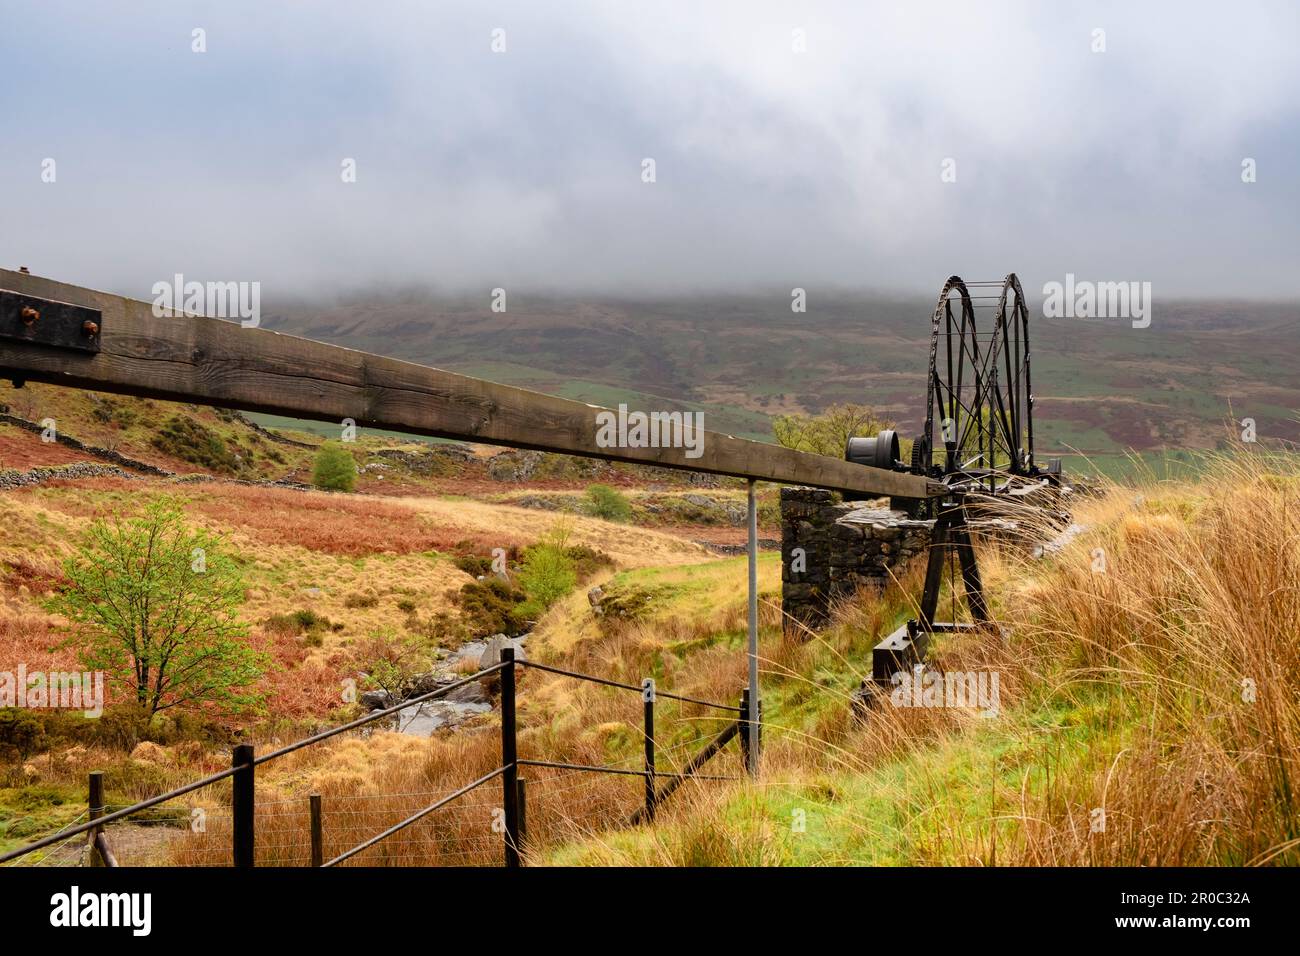 Überreste der Cwm Ciprwth Copper Mine über Cwm Pennant im Snowdonia National Park. Sehen Sie sich die restaurierten flachen Stangen und das Wasserrad an. Gwynedd Wales UK Stockfoto